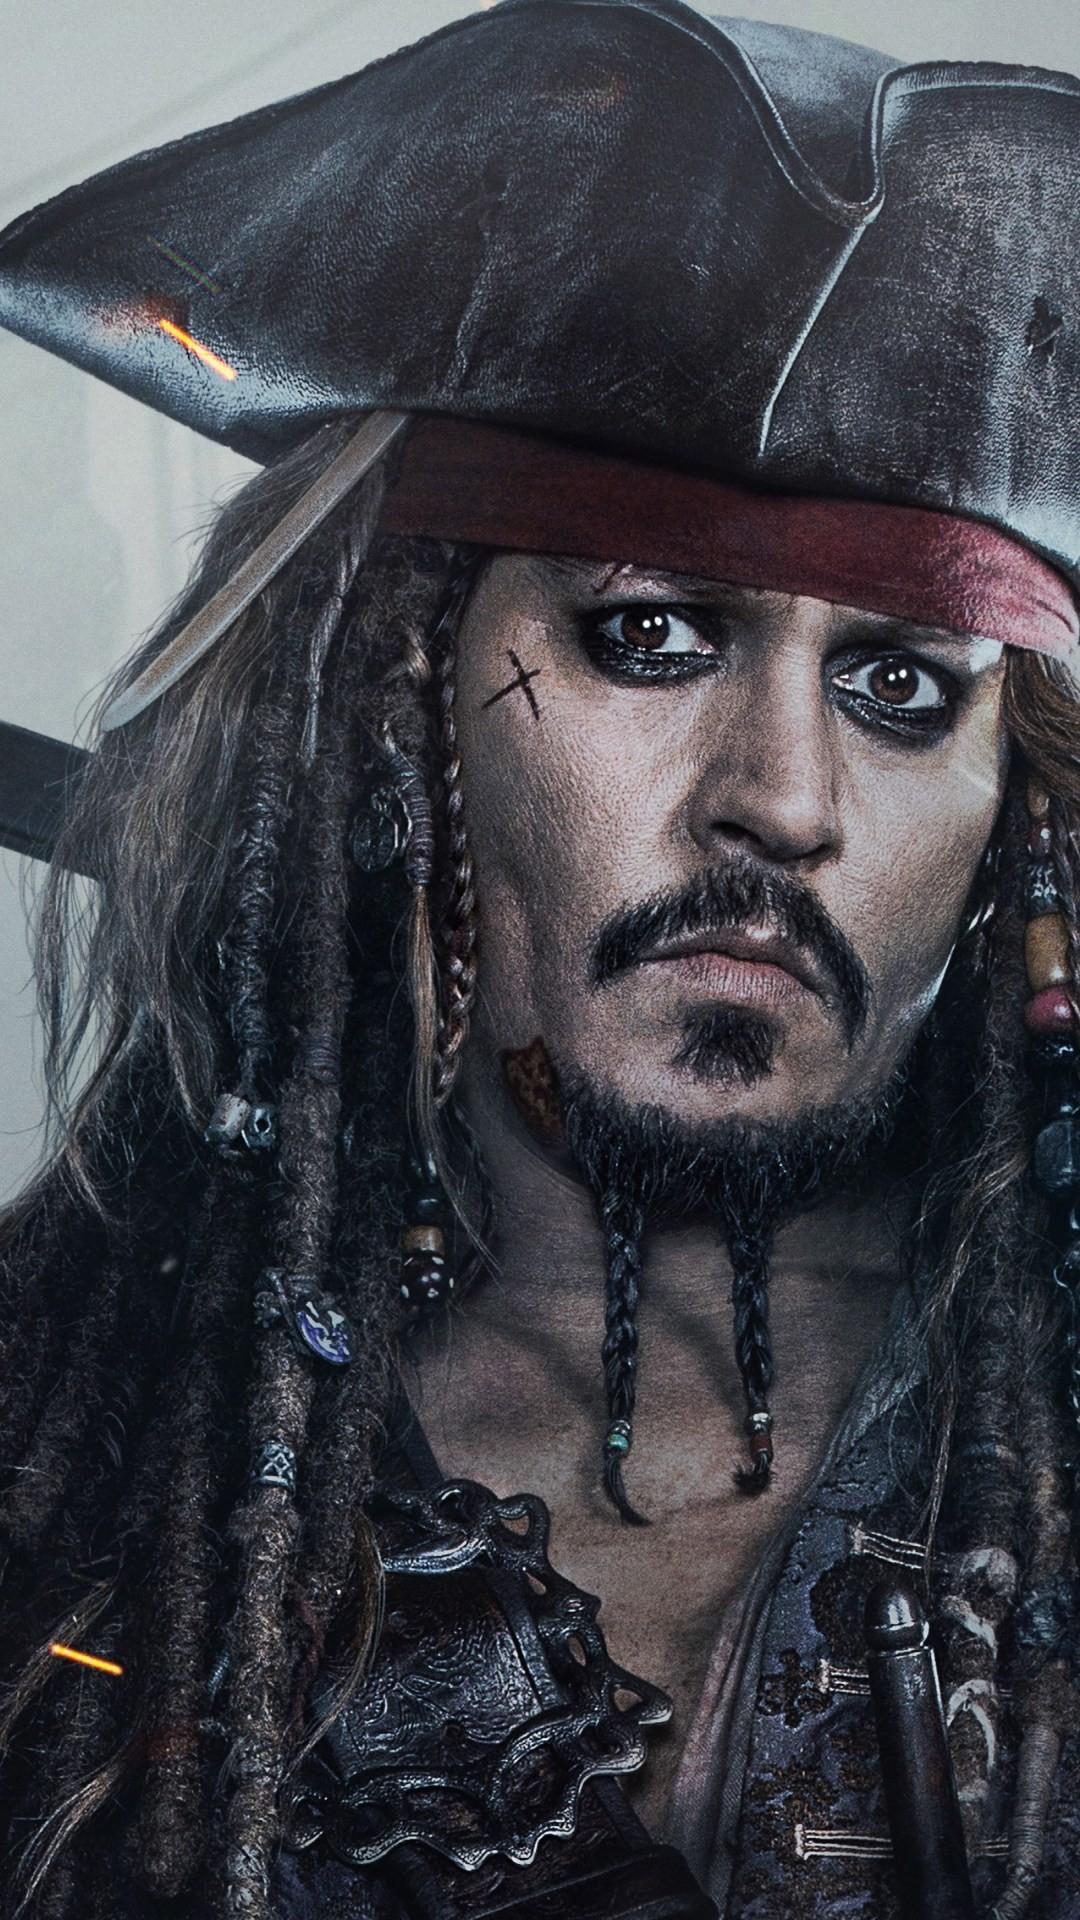 Captain Jack Sparrow Wallpaper background picture